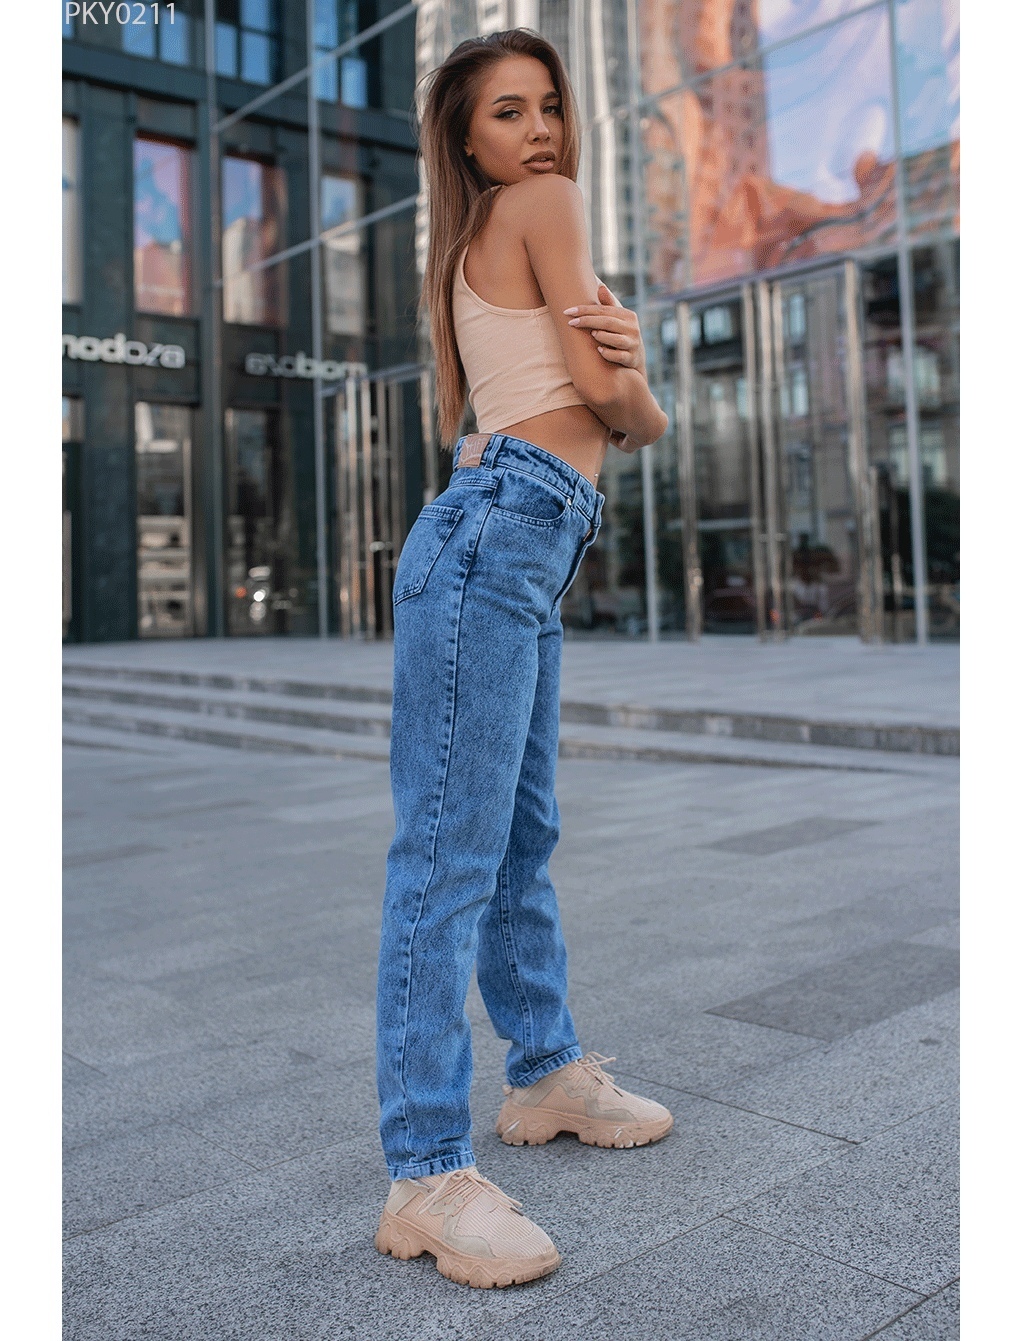 Джинсы купить по лучшей цене в интернет магазине Jeans24